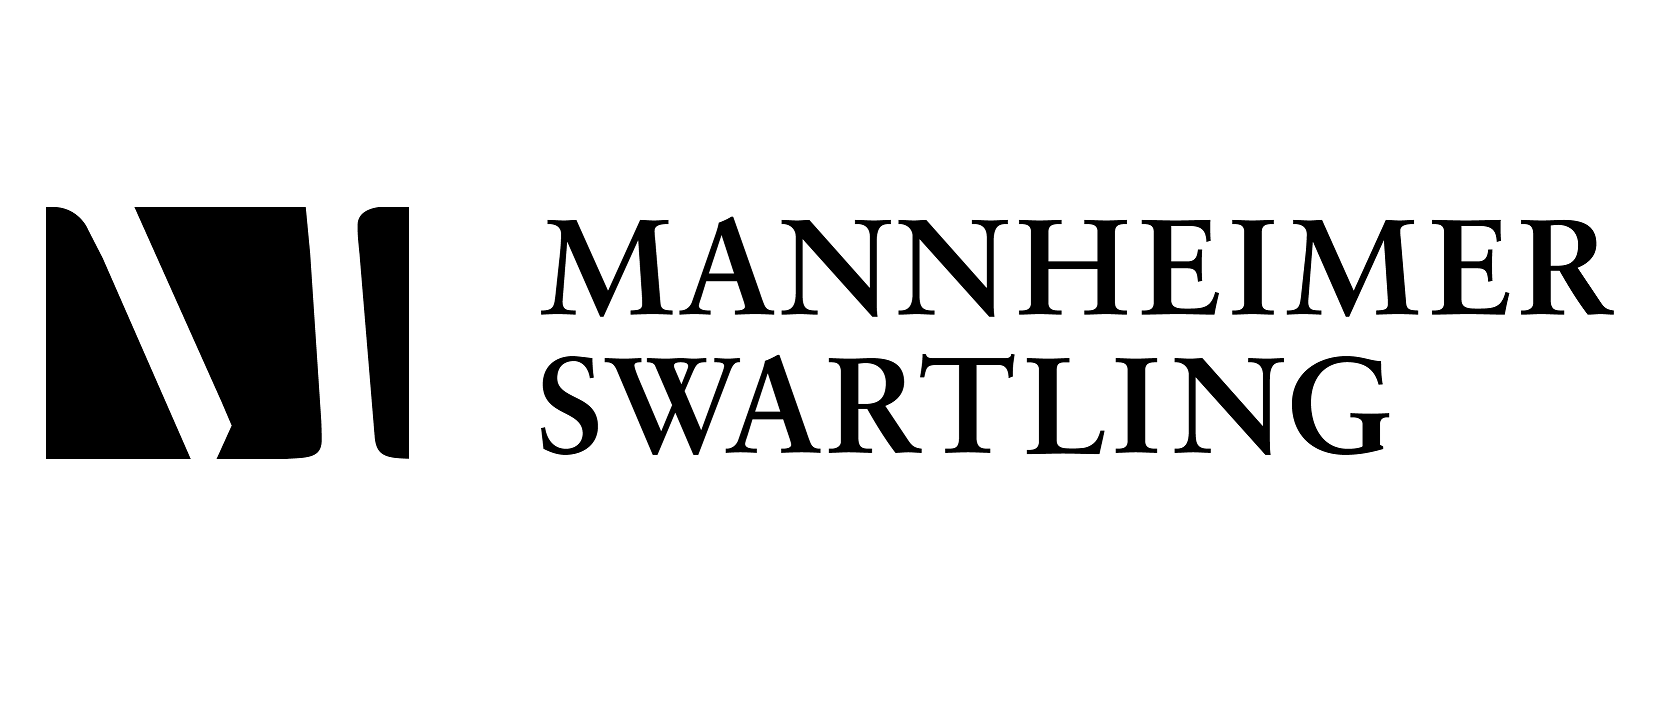 Mannheimer Swartling - Klövern Issues a Mortgage Backed Bond Loan of SEK 700 Million